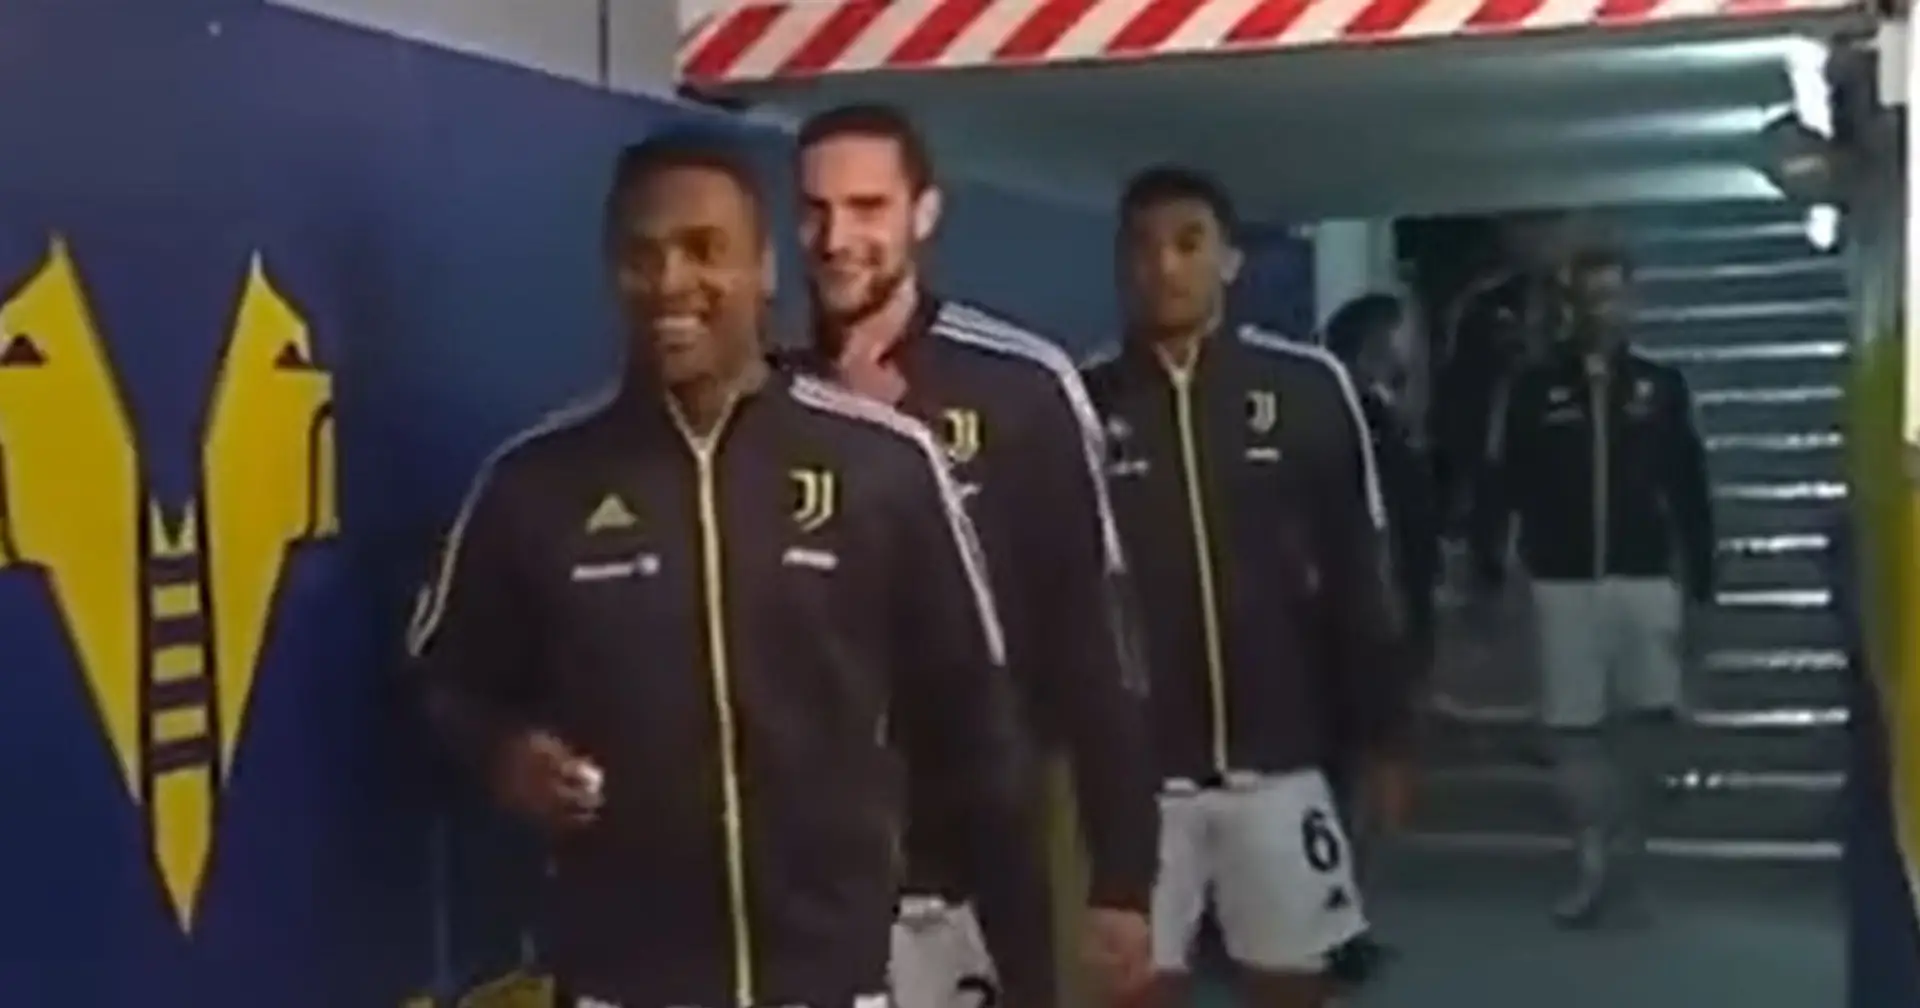 Le telecamere pizzicano Rabiot e Alex Sandro ridere e scherzare prima di Verona-Juve: è polemica sui social